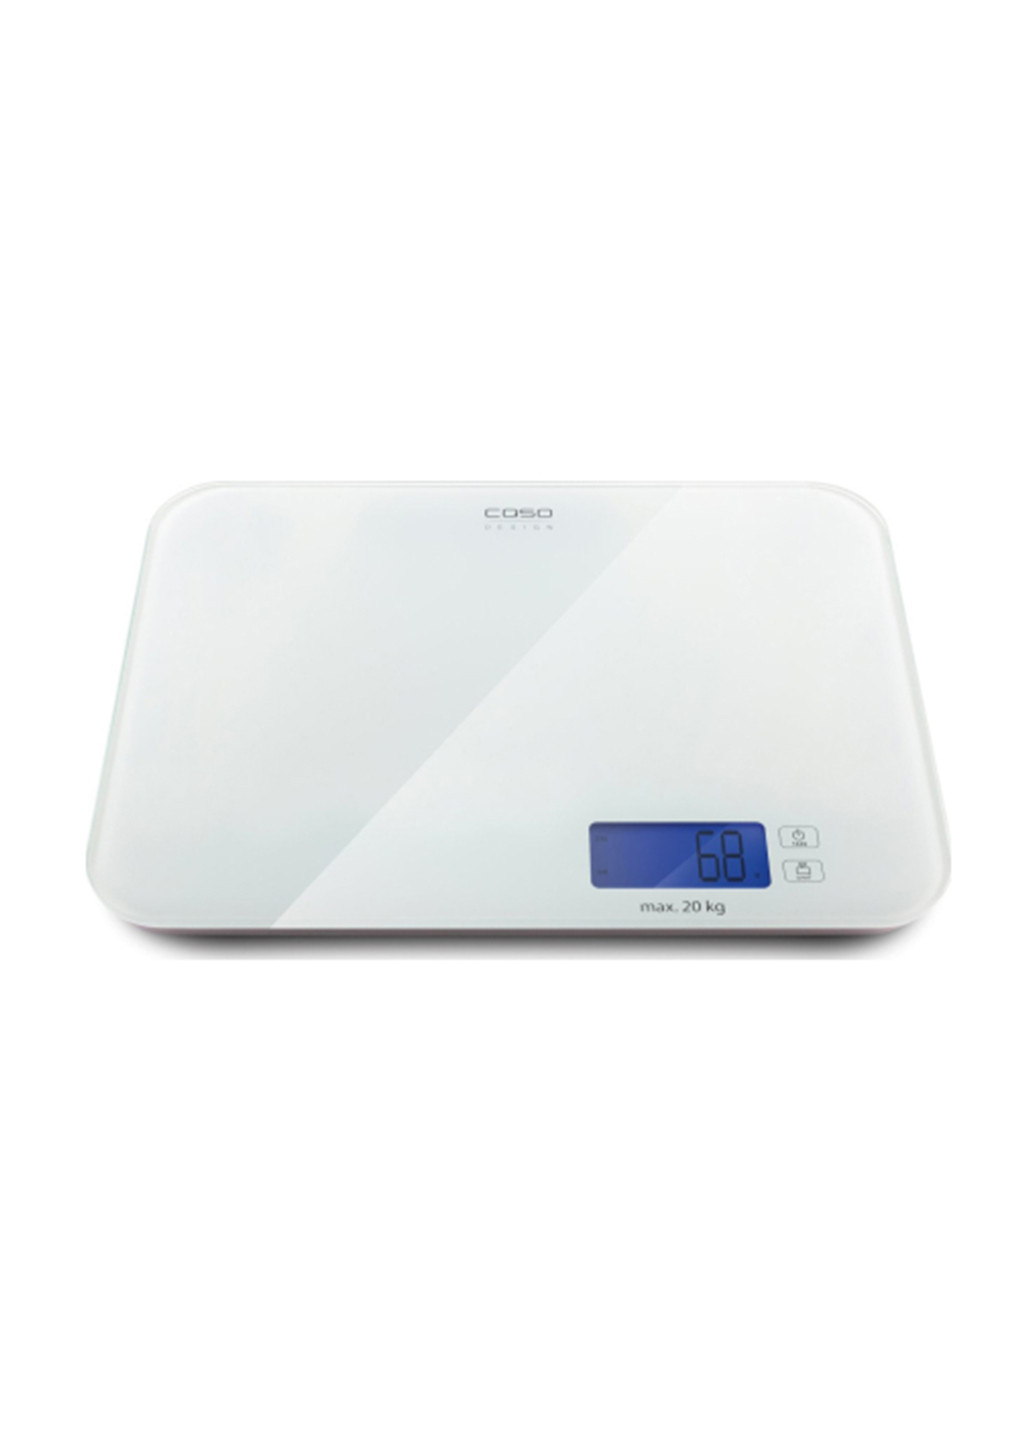 Кухонные весы Design scales CASO l20 (146305264)